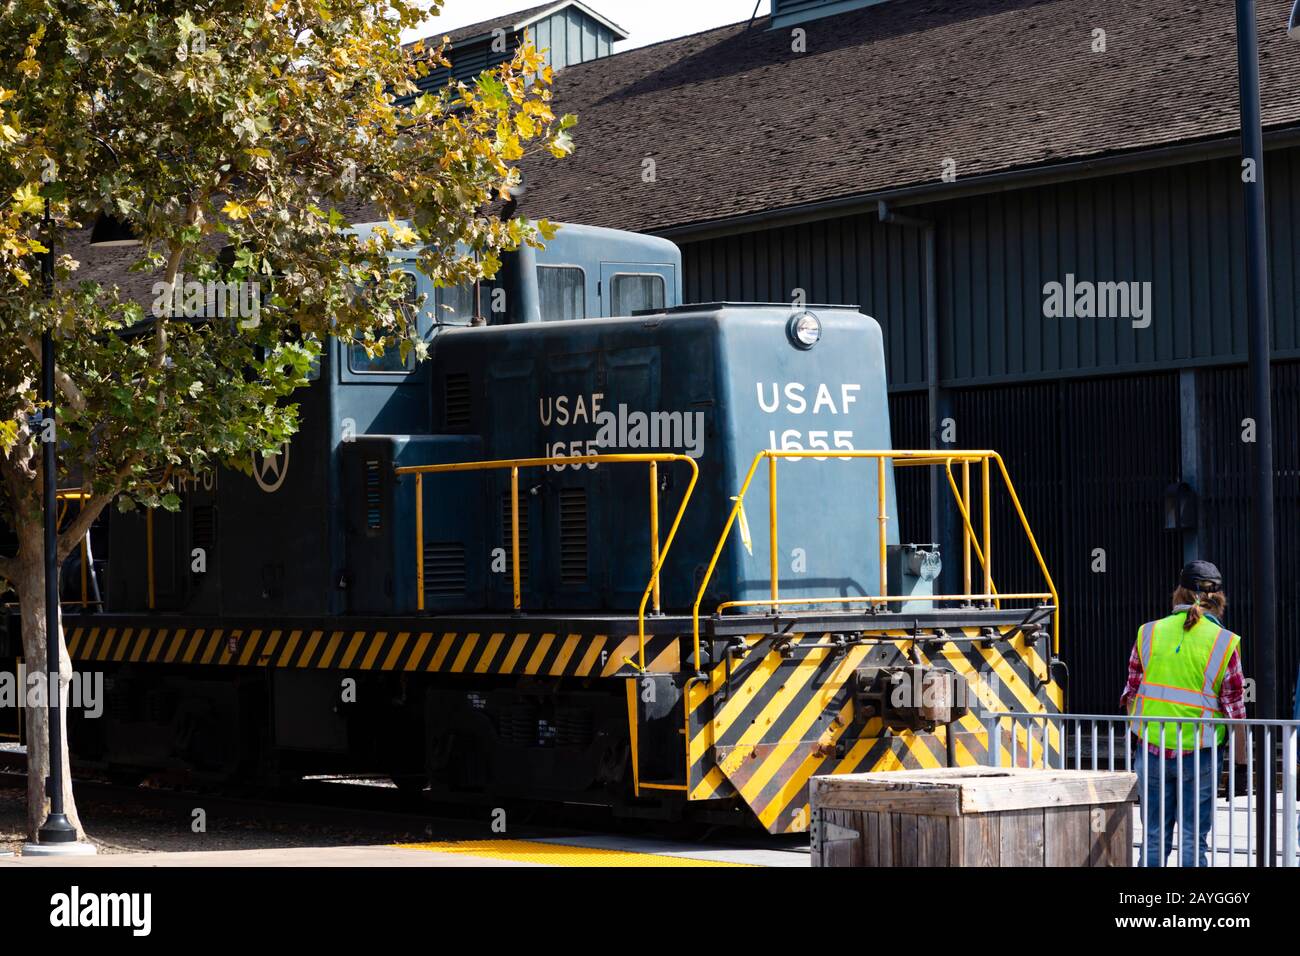 Ex USAF 1655 Diesel Shunter des California State Railroad Museum mit ehrenamtlicher Wache. Altstadt, Sacramento, Kalifornien, USA. Stockfoto